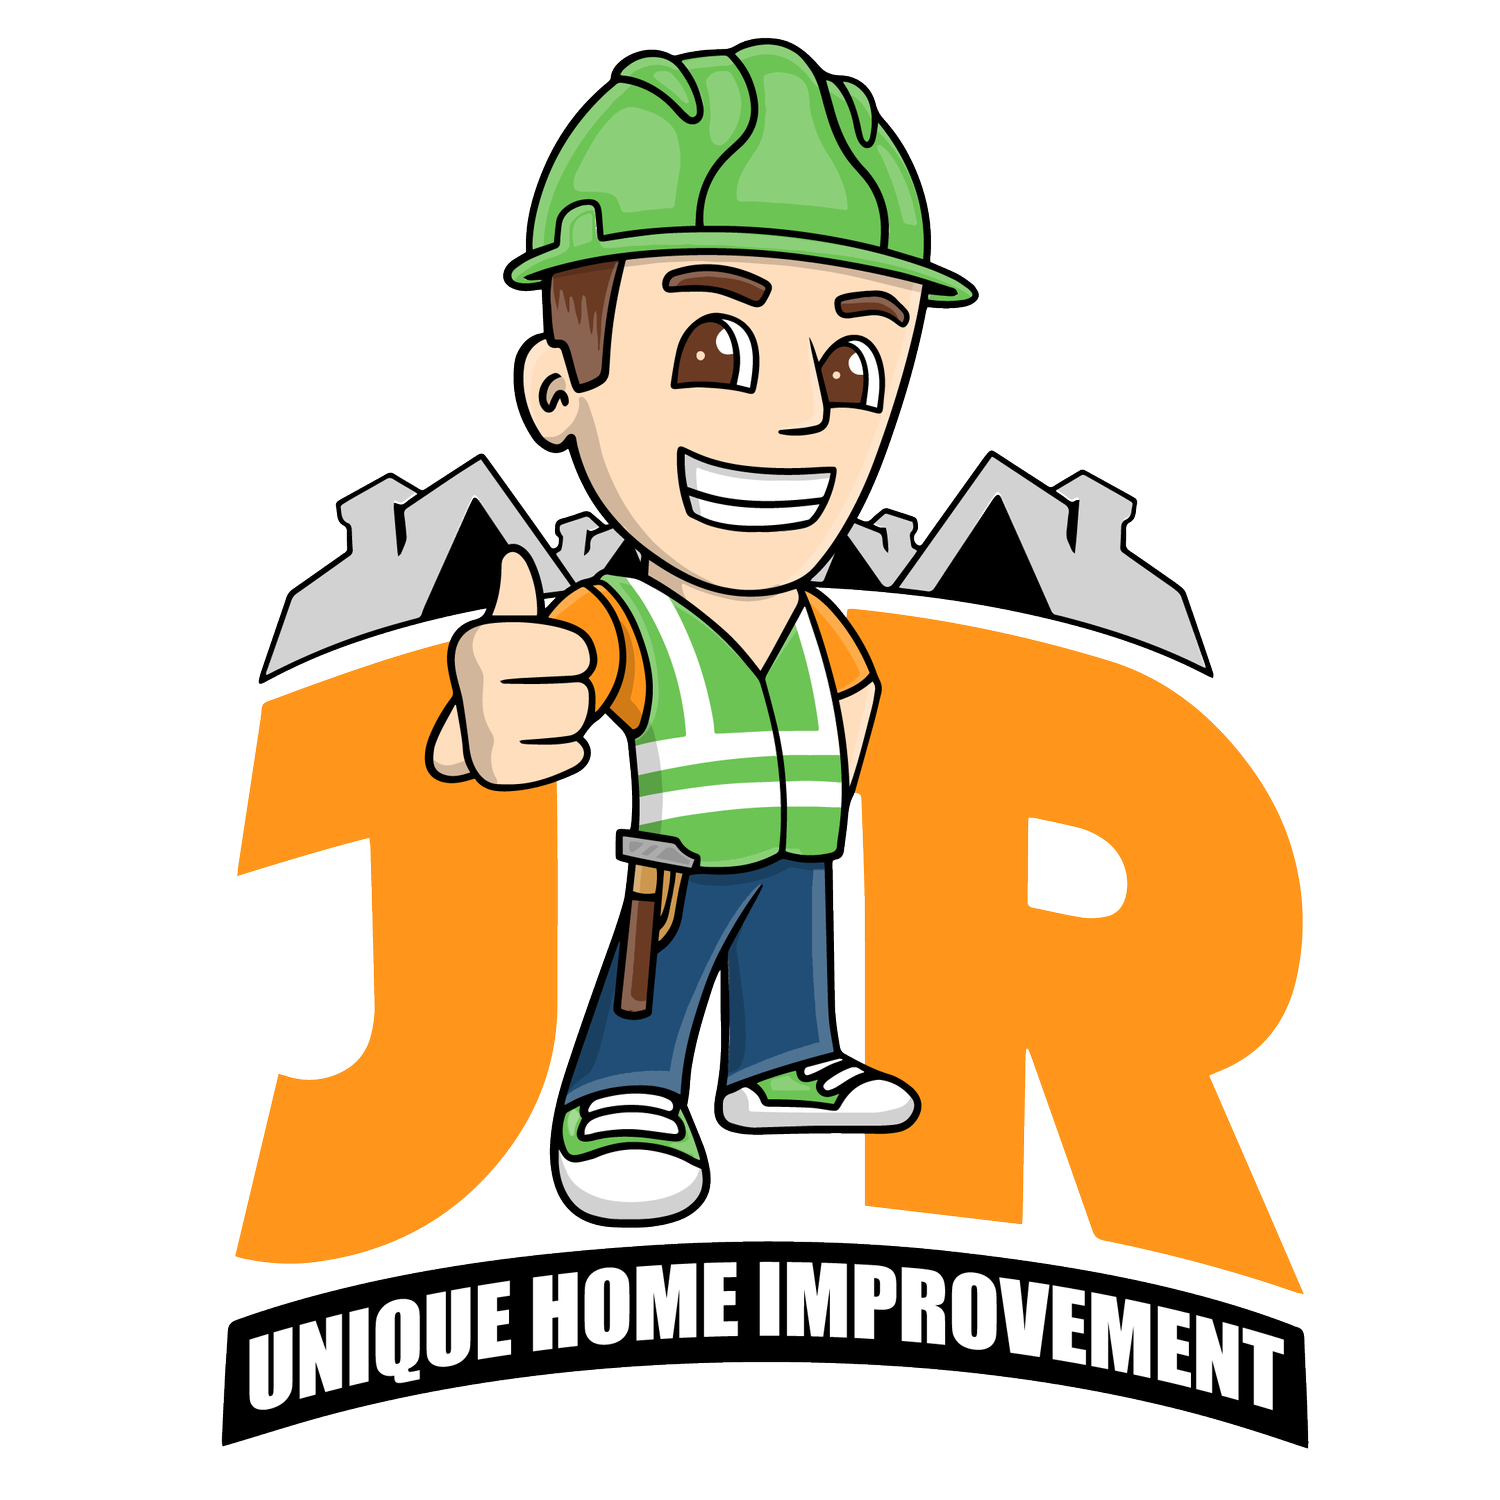 JR Unique Home Improvement